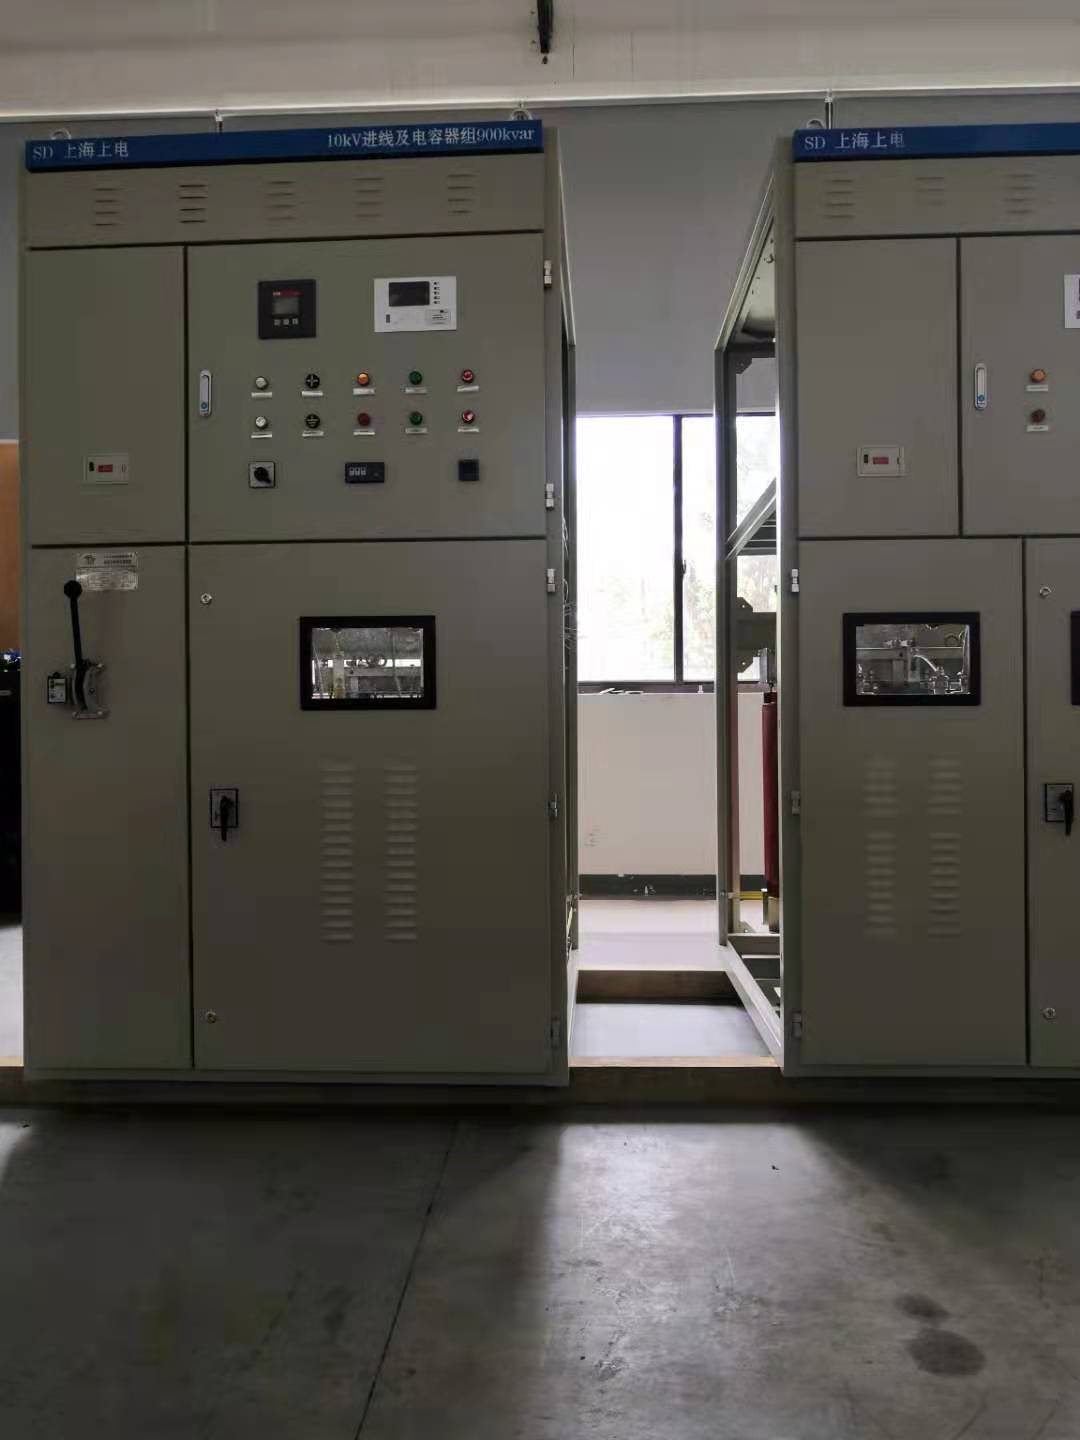 高压并联电容器自动补偿装置 上海上电电容器有限公司 TBBZ10-(300+600+600)BL6